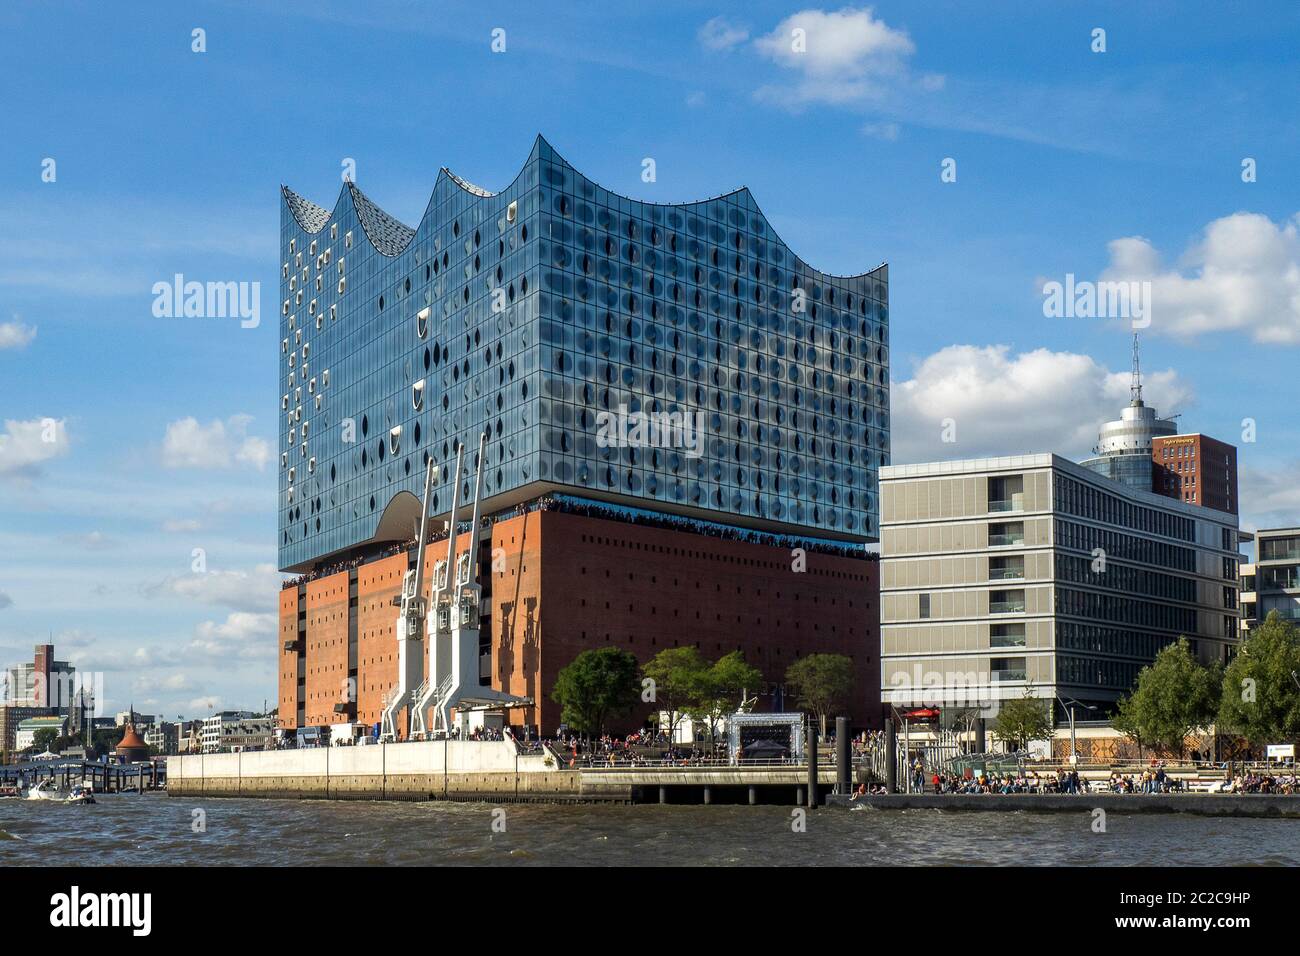 Germania, città anseatica libera di Amburgo - Elbphilharmonie sul fiume Elba Foto Stock